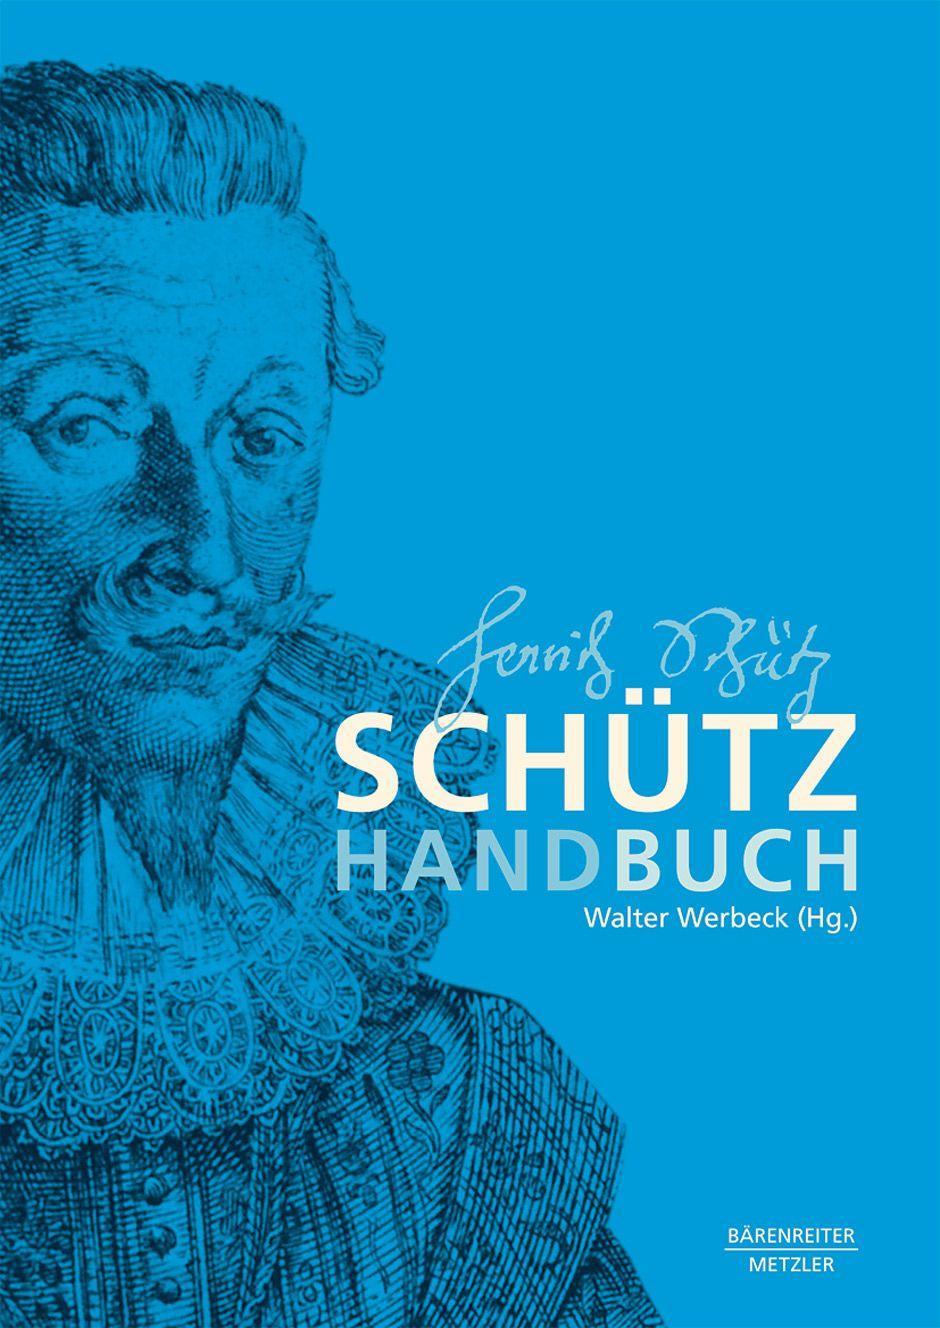 Book Schutz-Handbuch Walter Werbeck